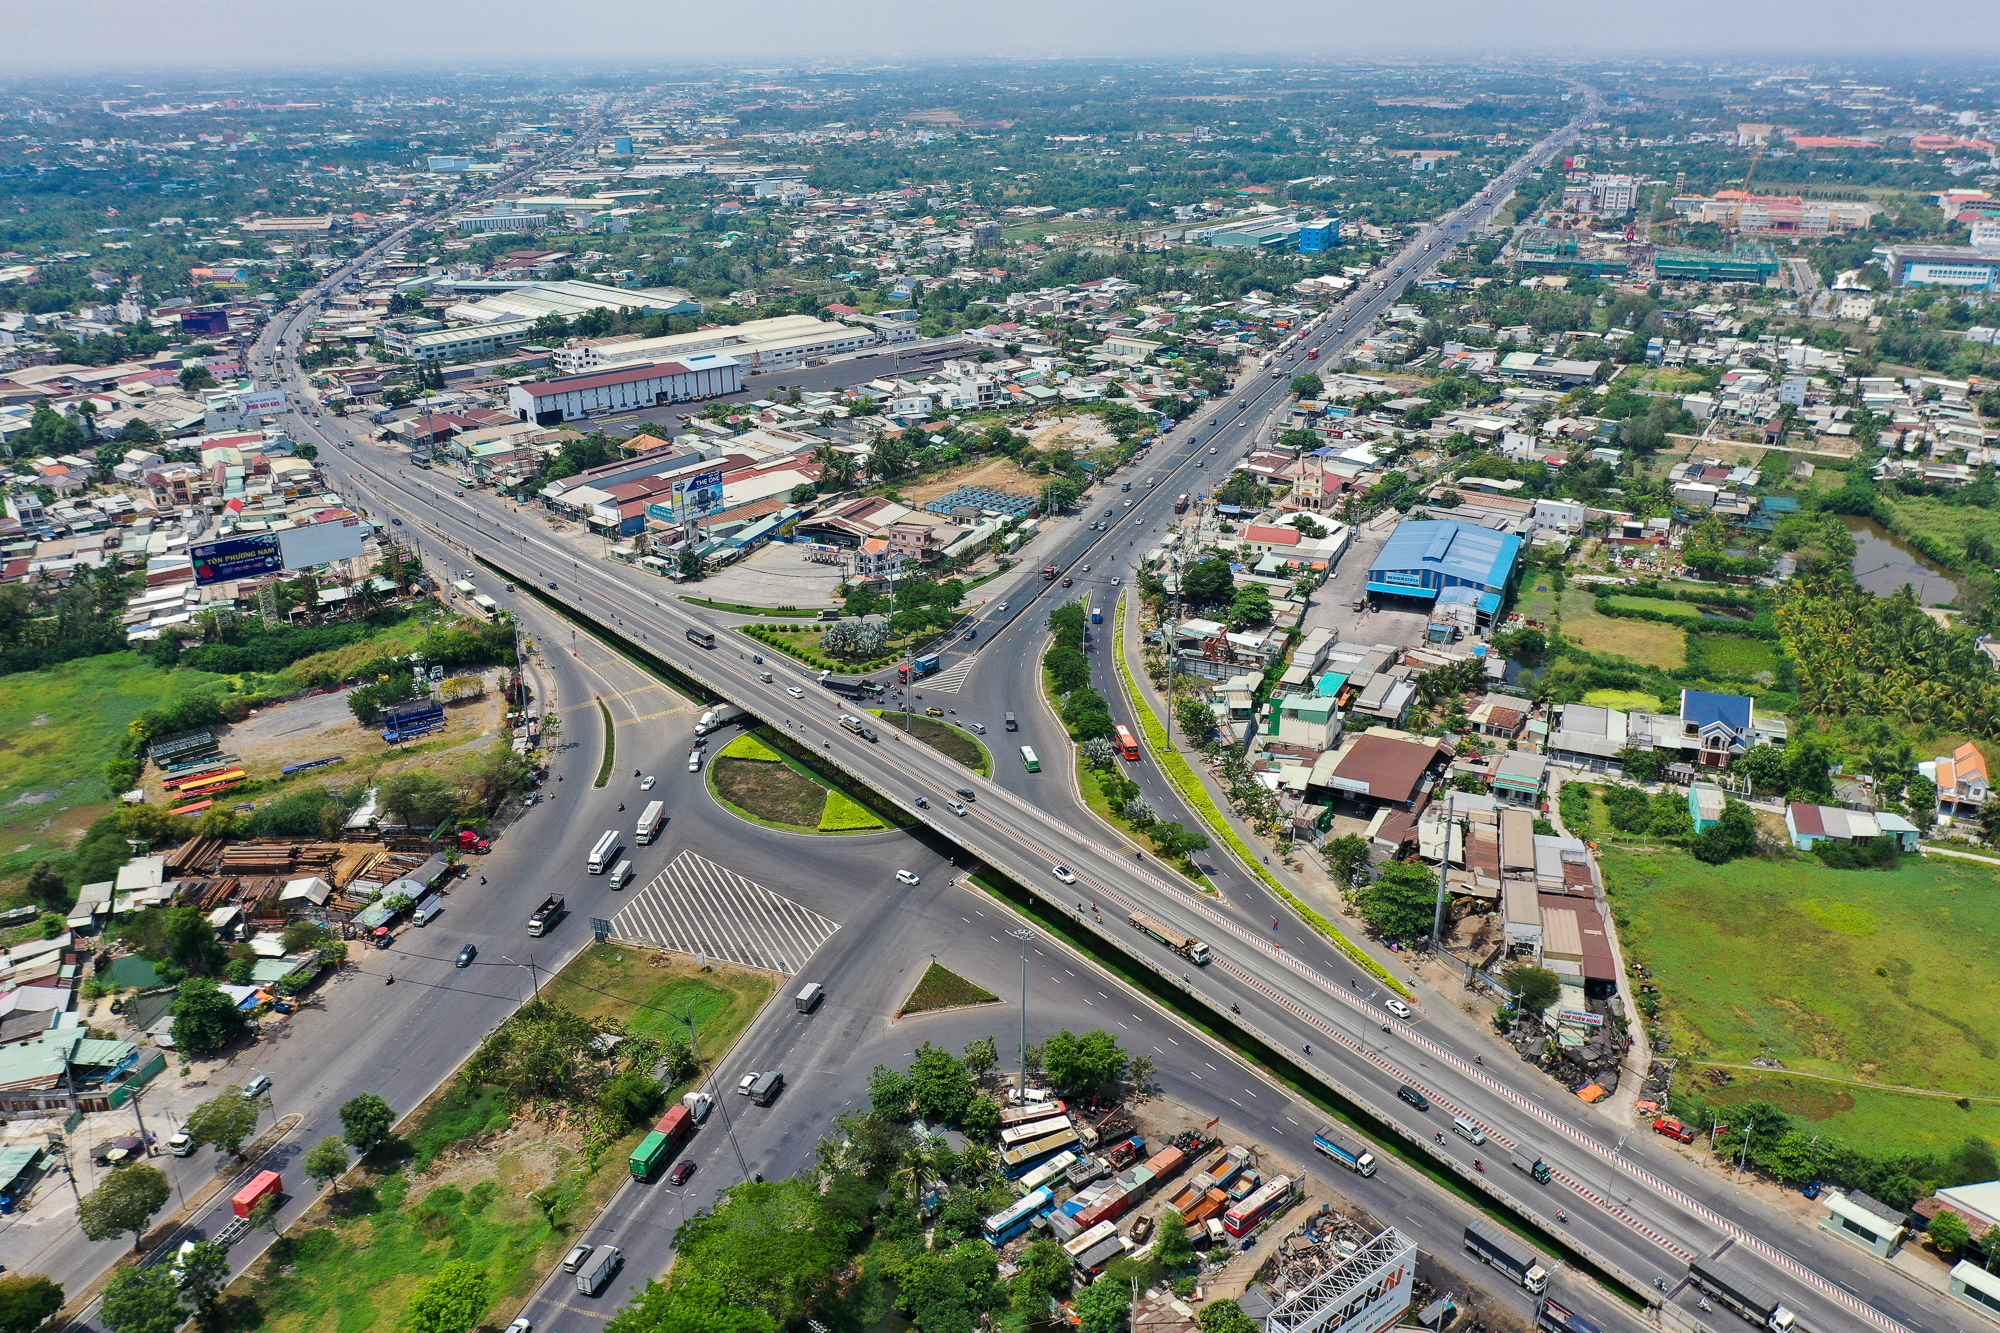 Diện mạo huyện đông dân nhất Việt Nam muốn trở thành thành phố - Ảnh 6.